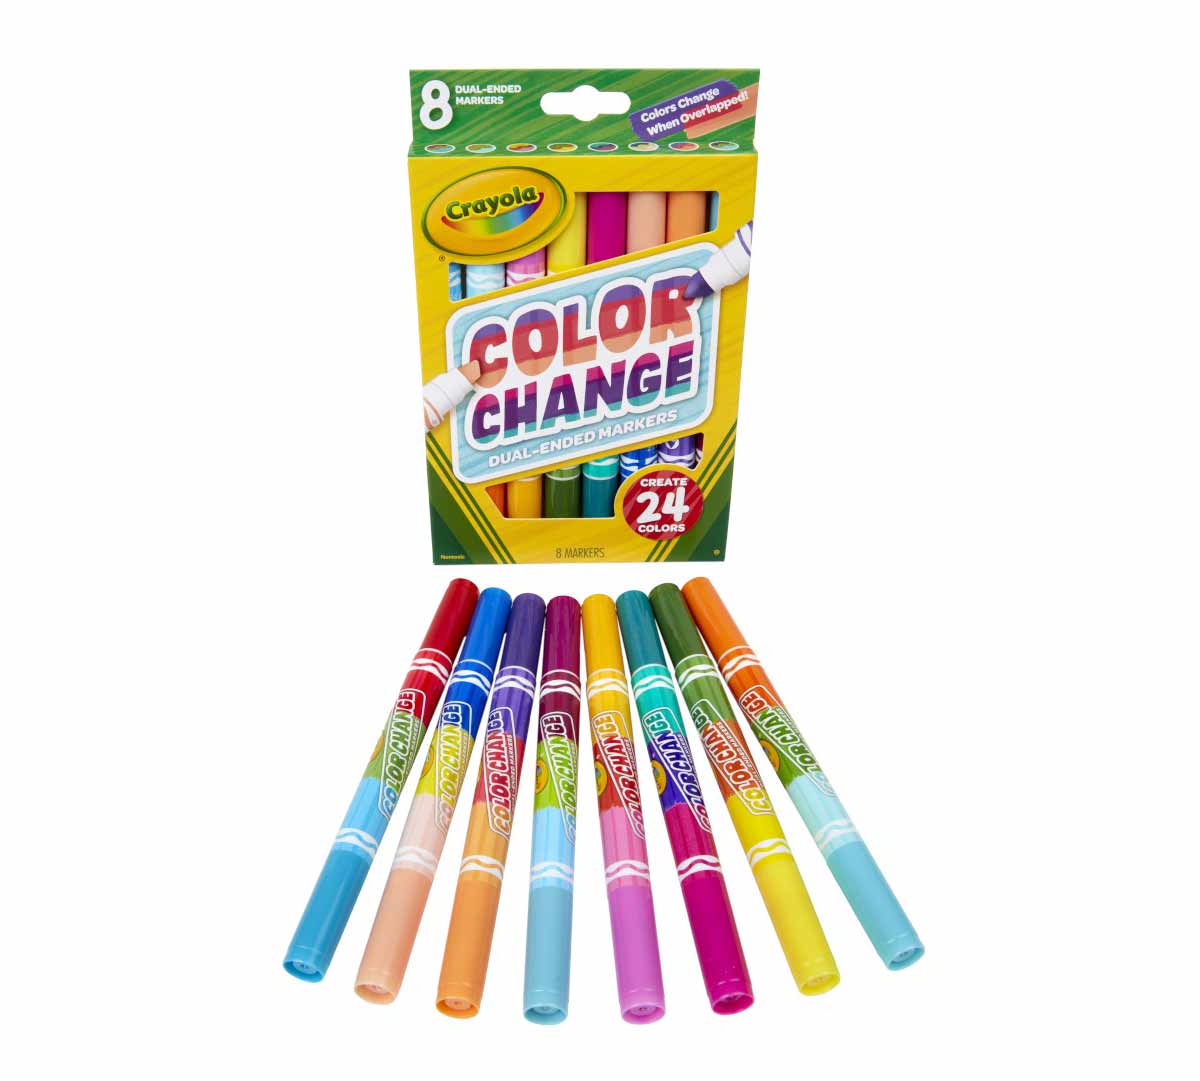 https://shop.crayola.com/on/demandware.static/-/Sites-crayola-storefront/default/dw79497d84/images/58-8316-0-200_Color-Change-Dual-Ended-Markers_8ct_6.jpg